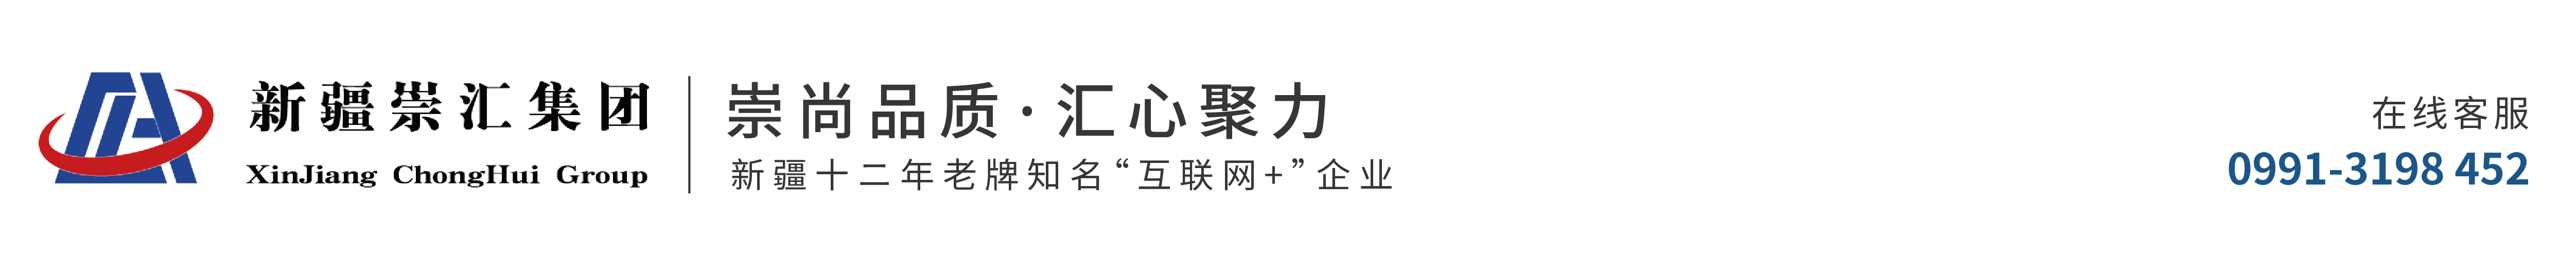 新疆崇汇集团_Logo